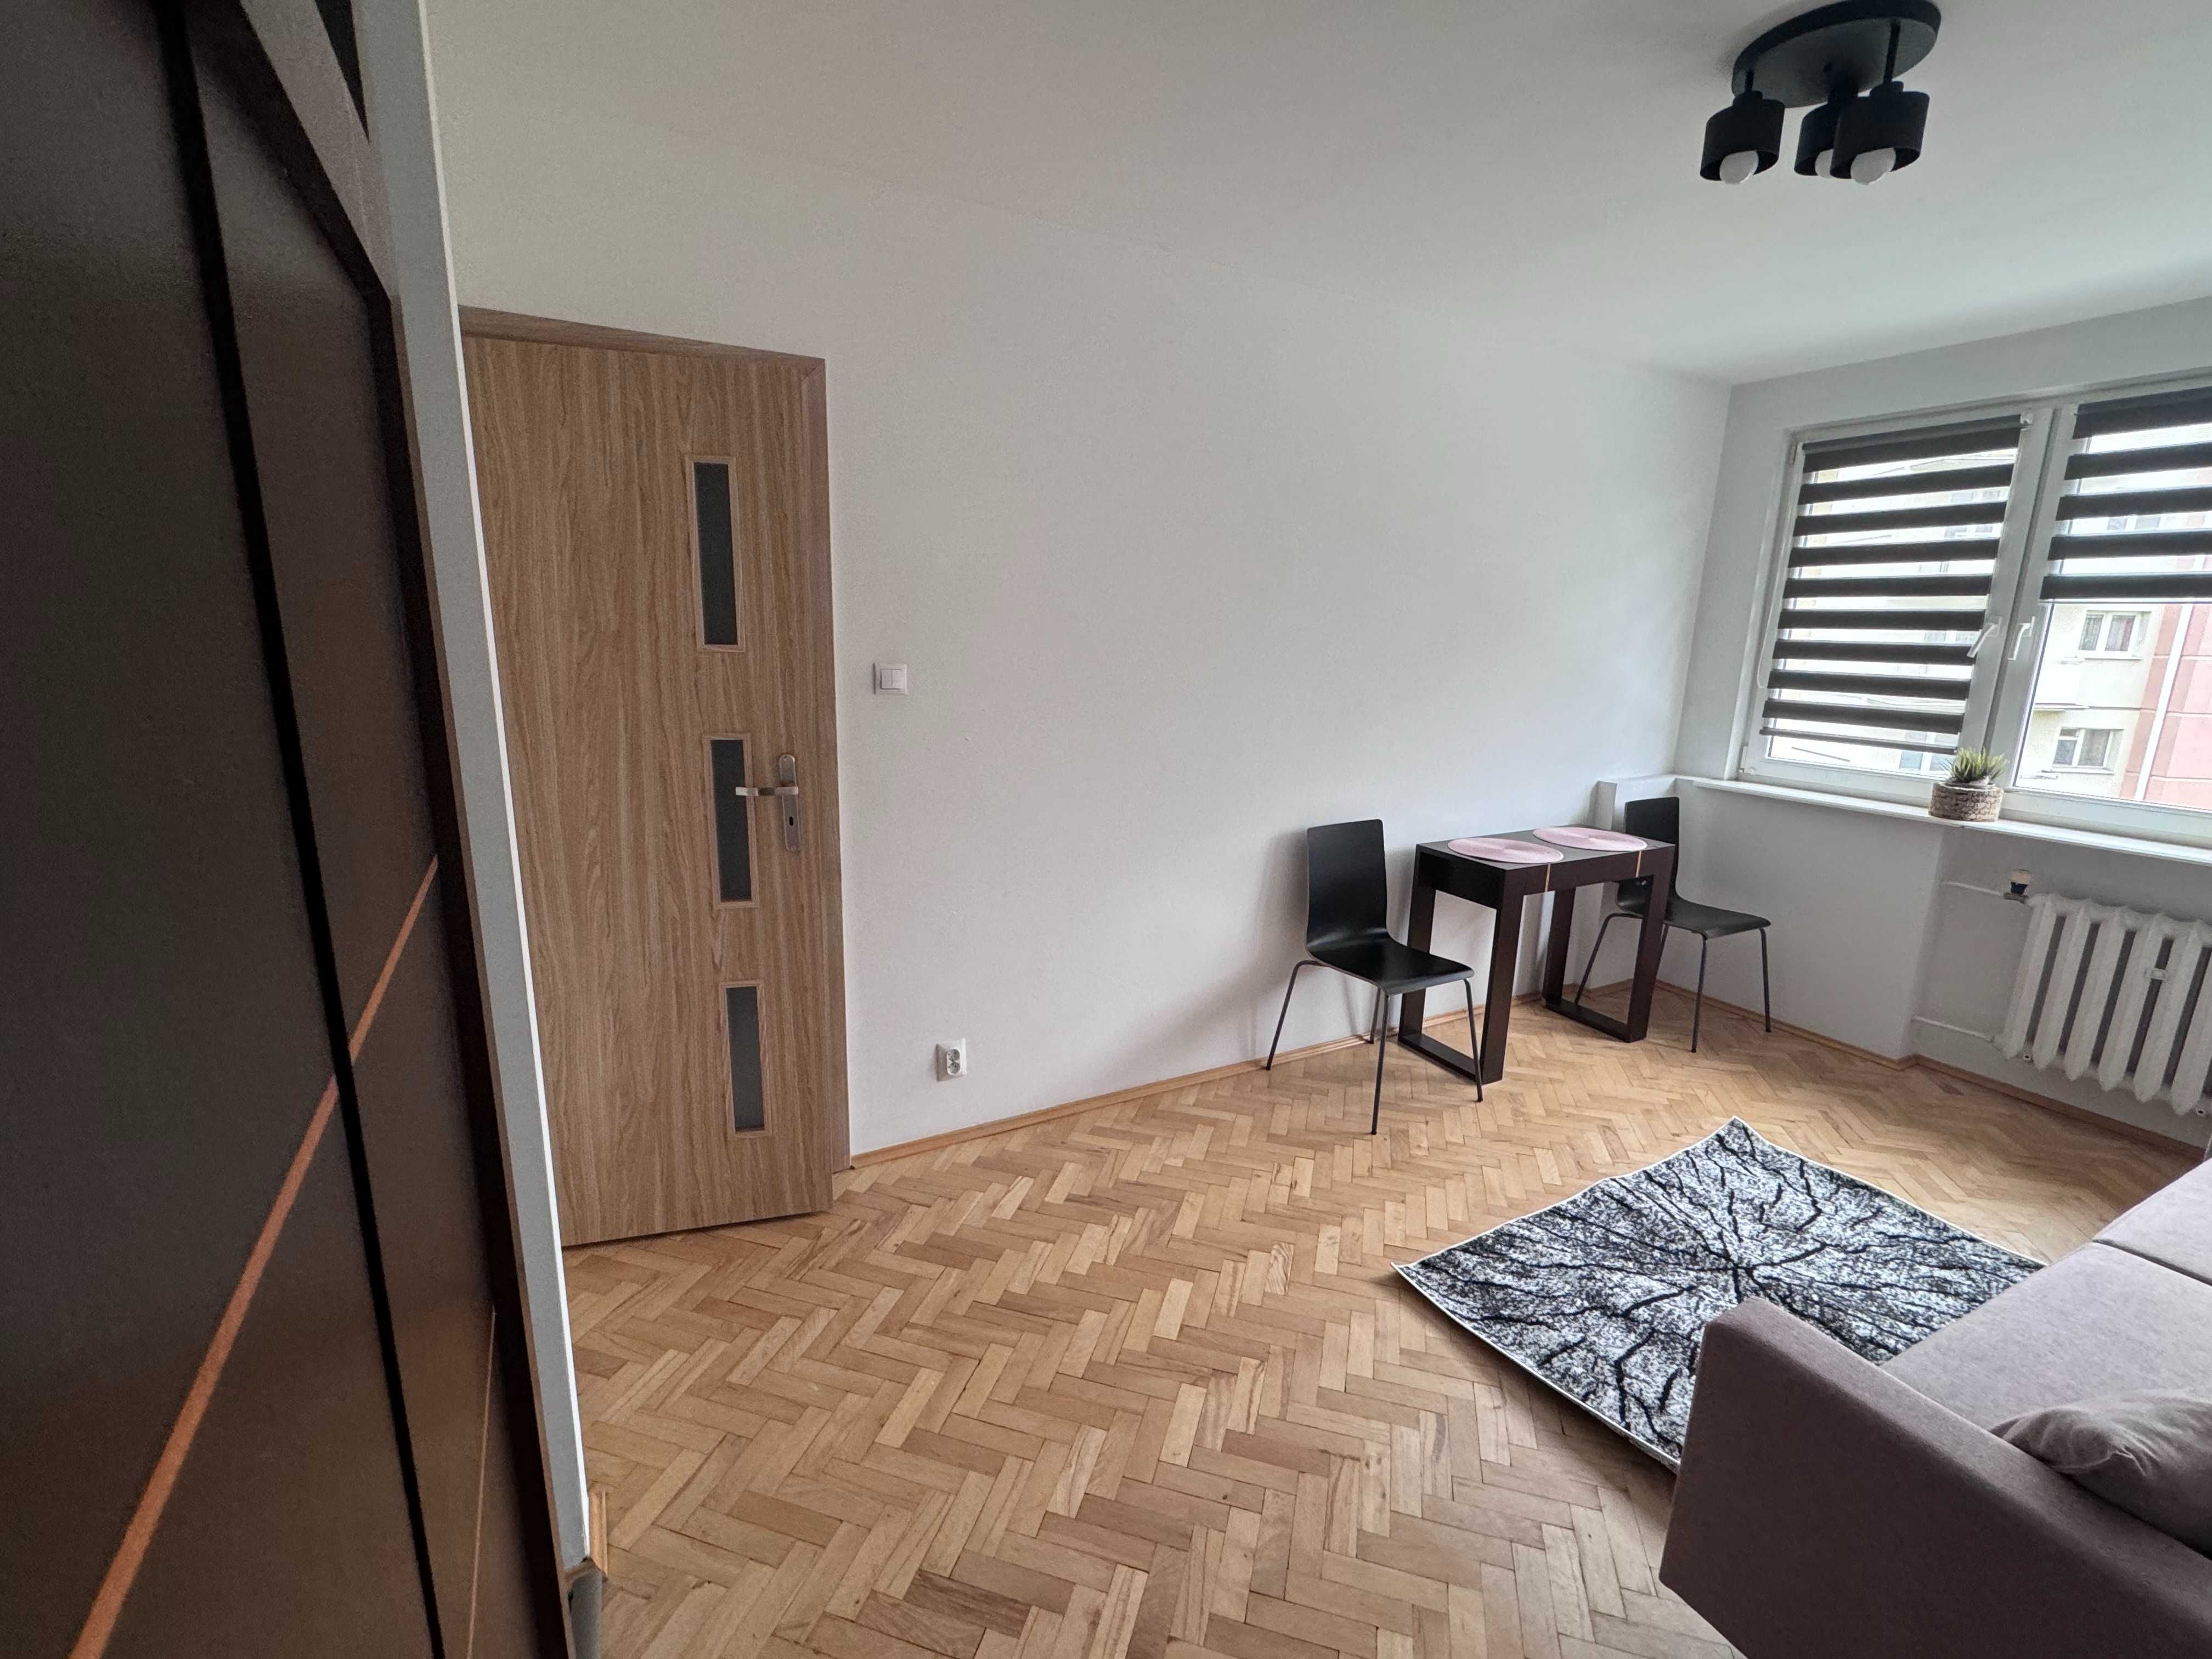 Mieszkanie do wynajęcia 2 pokoje Gdańsk Przymorze od zaraz